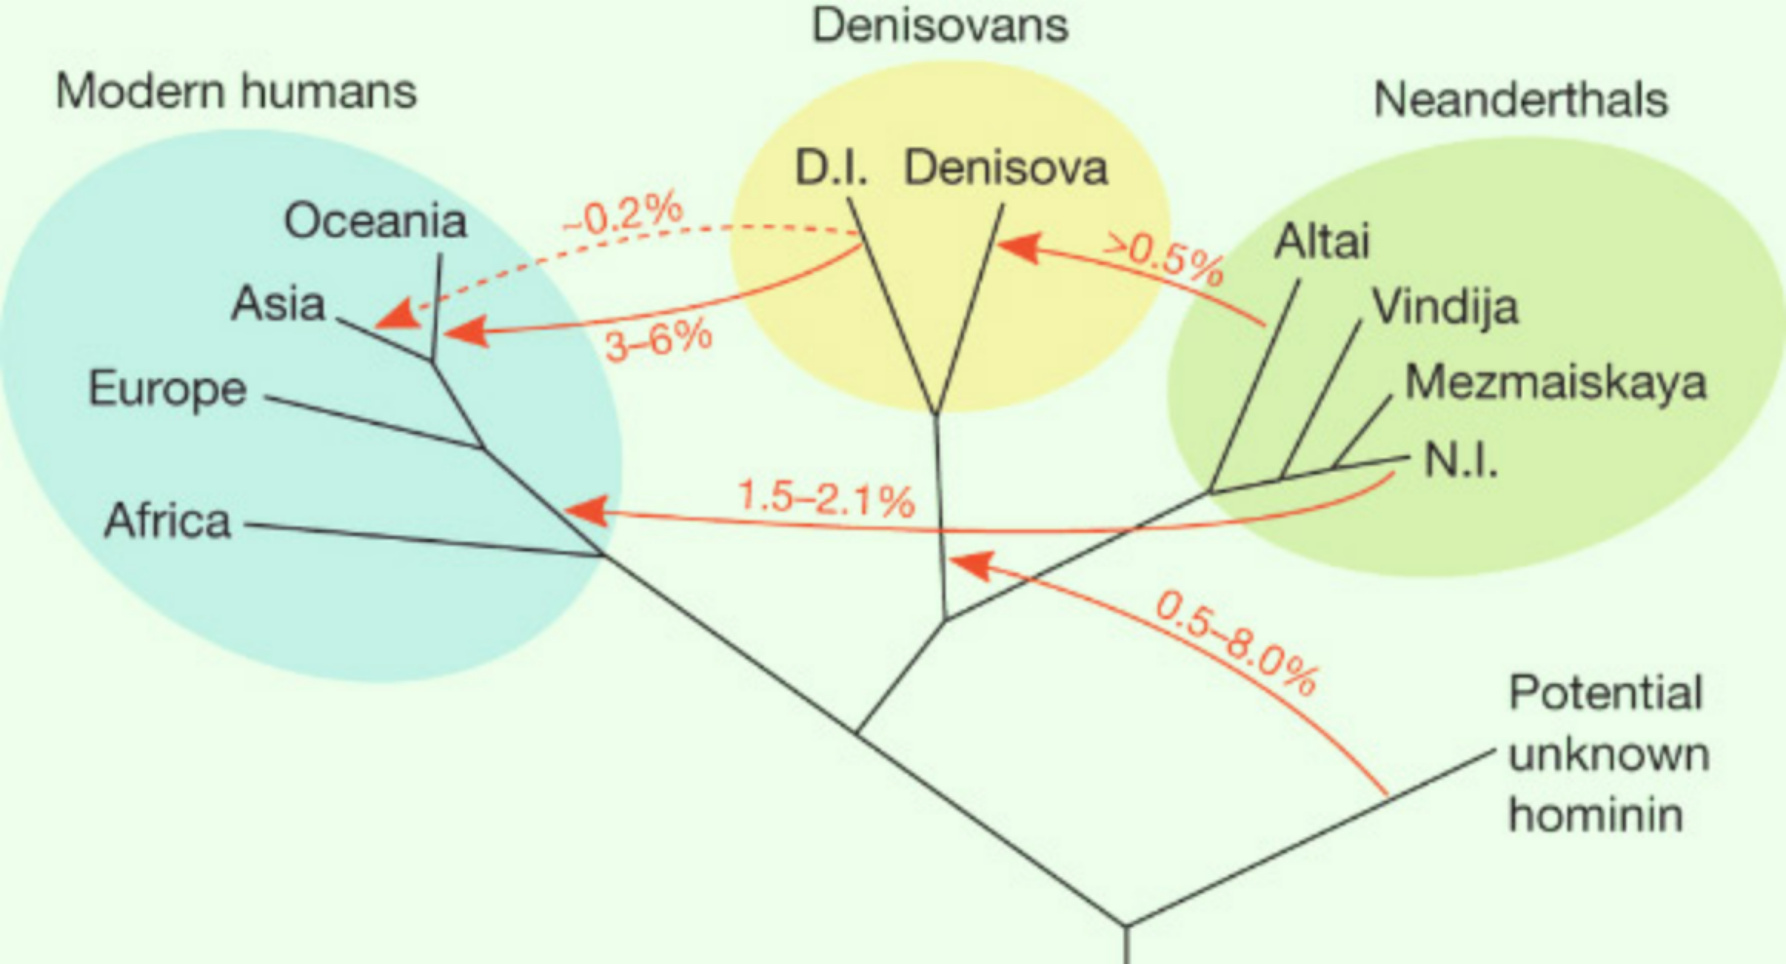 Albero genealogico dei primi umani che potrebbero aver vissuto in Eurasia più di 50,000 anni fa.